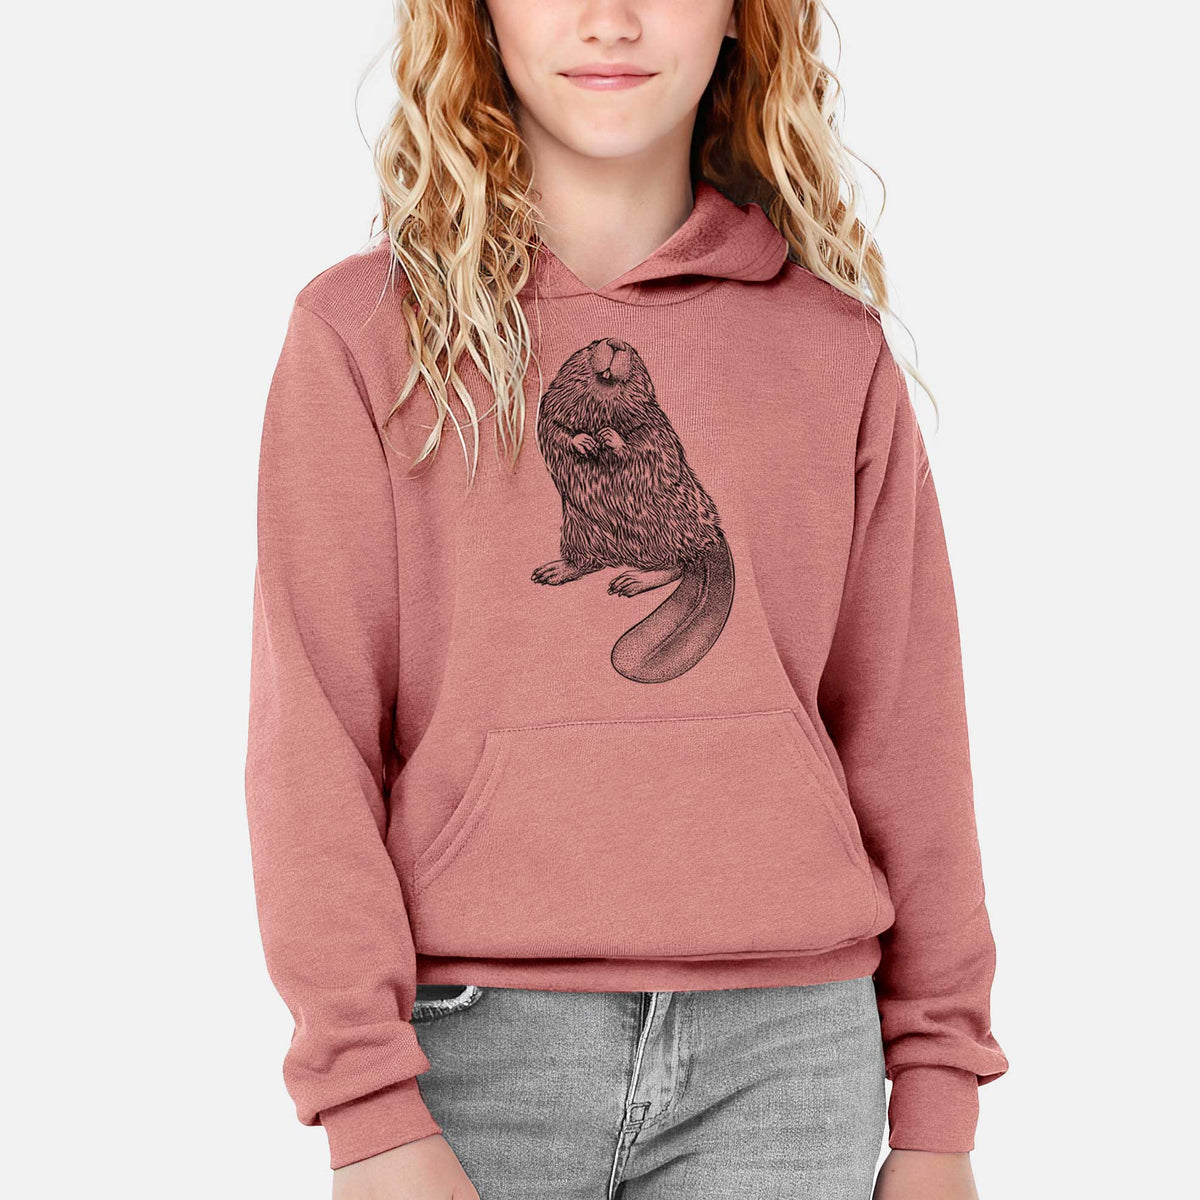 North American Beaver - Castor canadensis - Youth Hoodie Sweatshirt